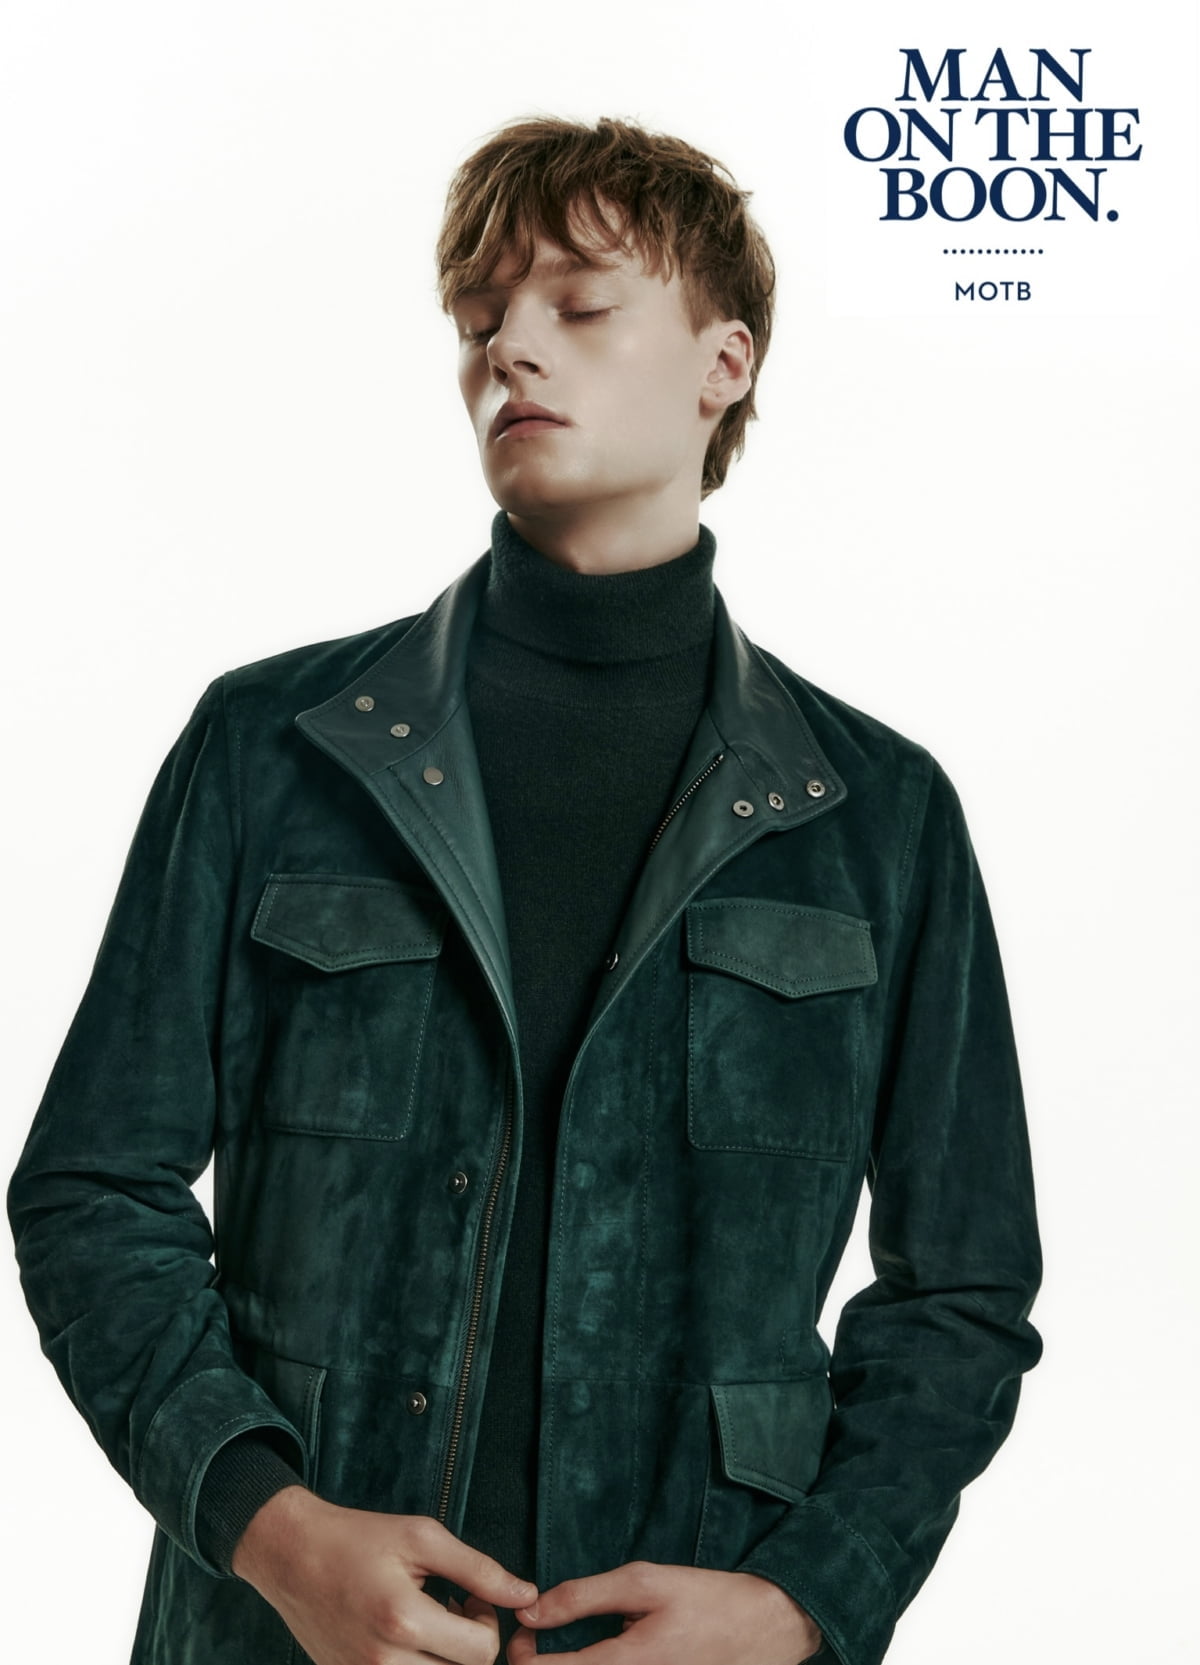 신세계인터, 남성복 '맨온더분' 파리 패션위크 쇼룸 입점